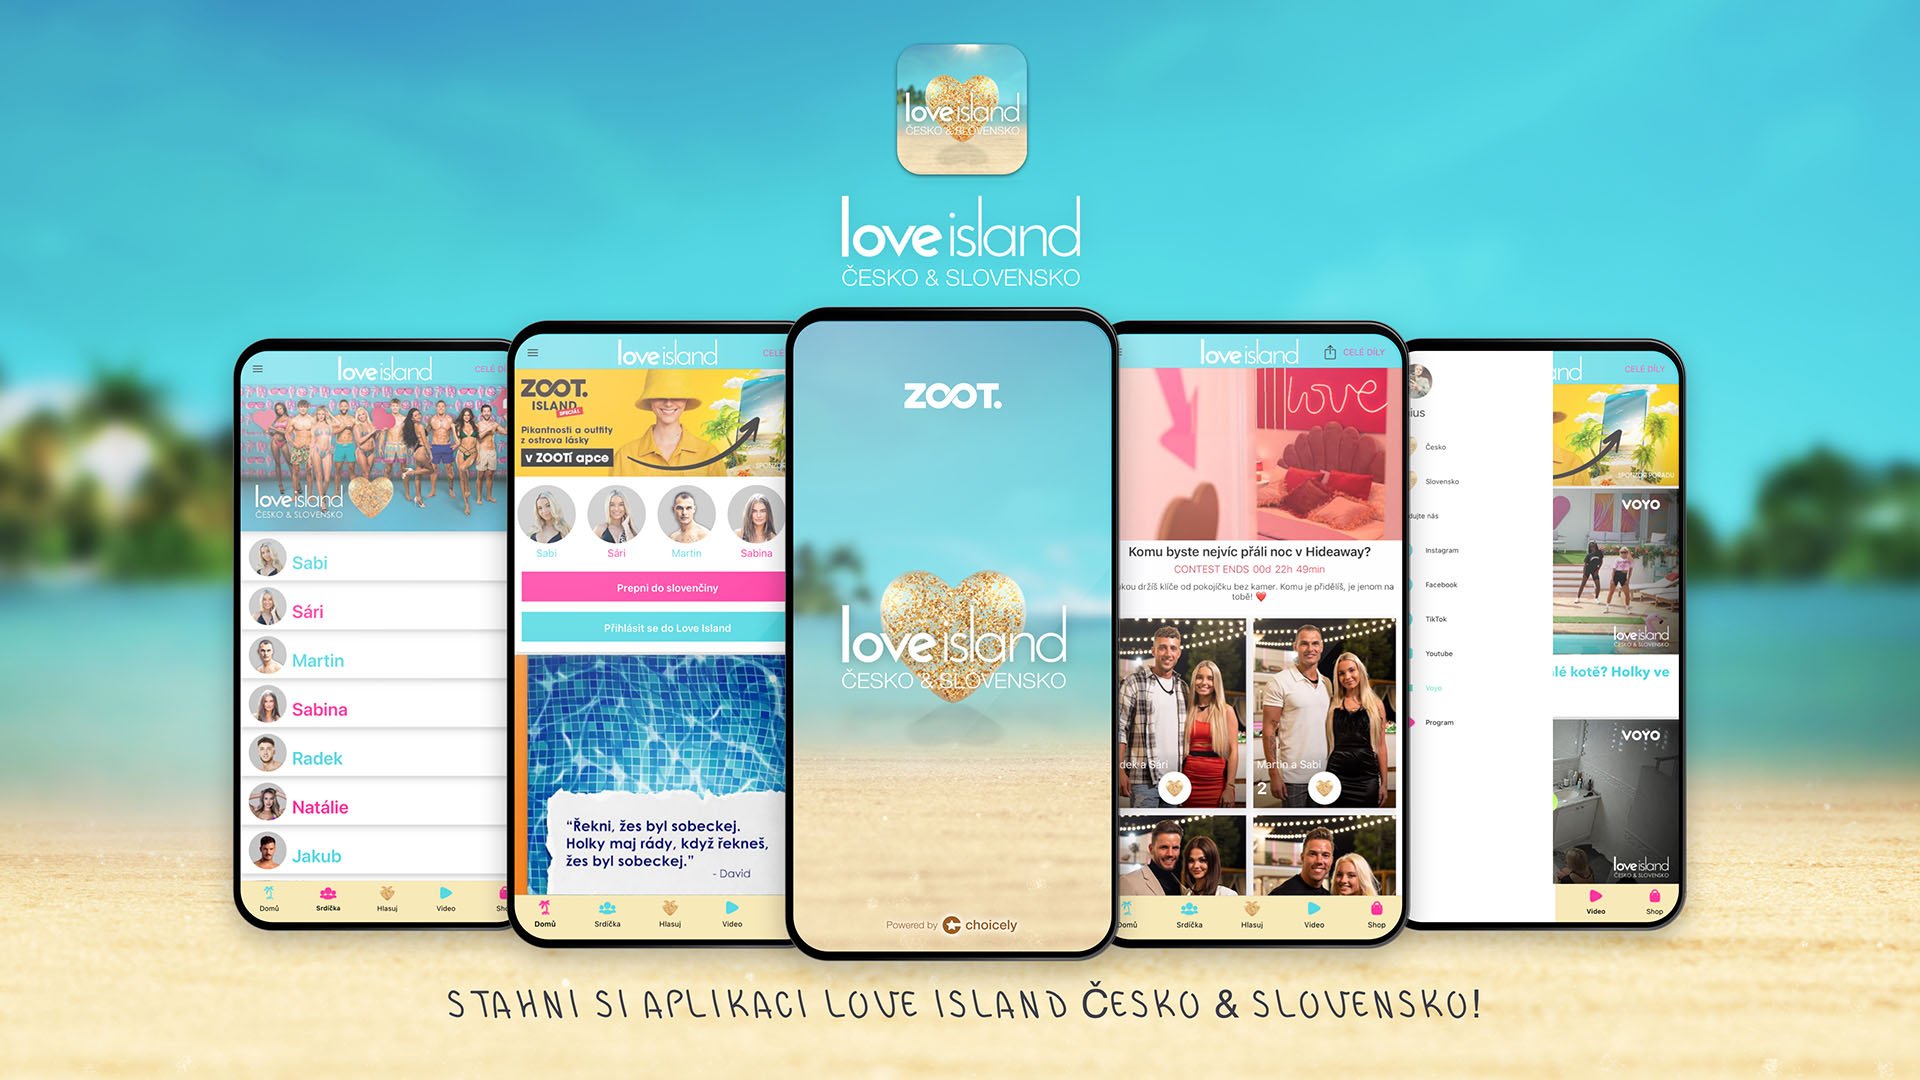 Love Island Czech & Slovakia season 2 launch - Powered by Choicely